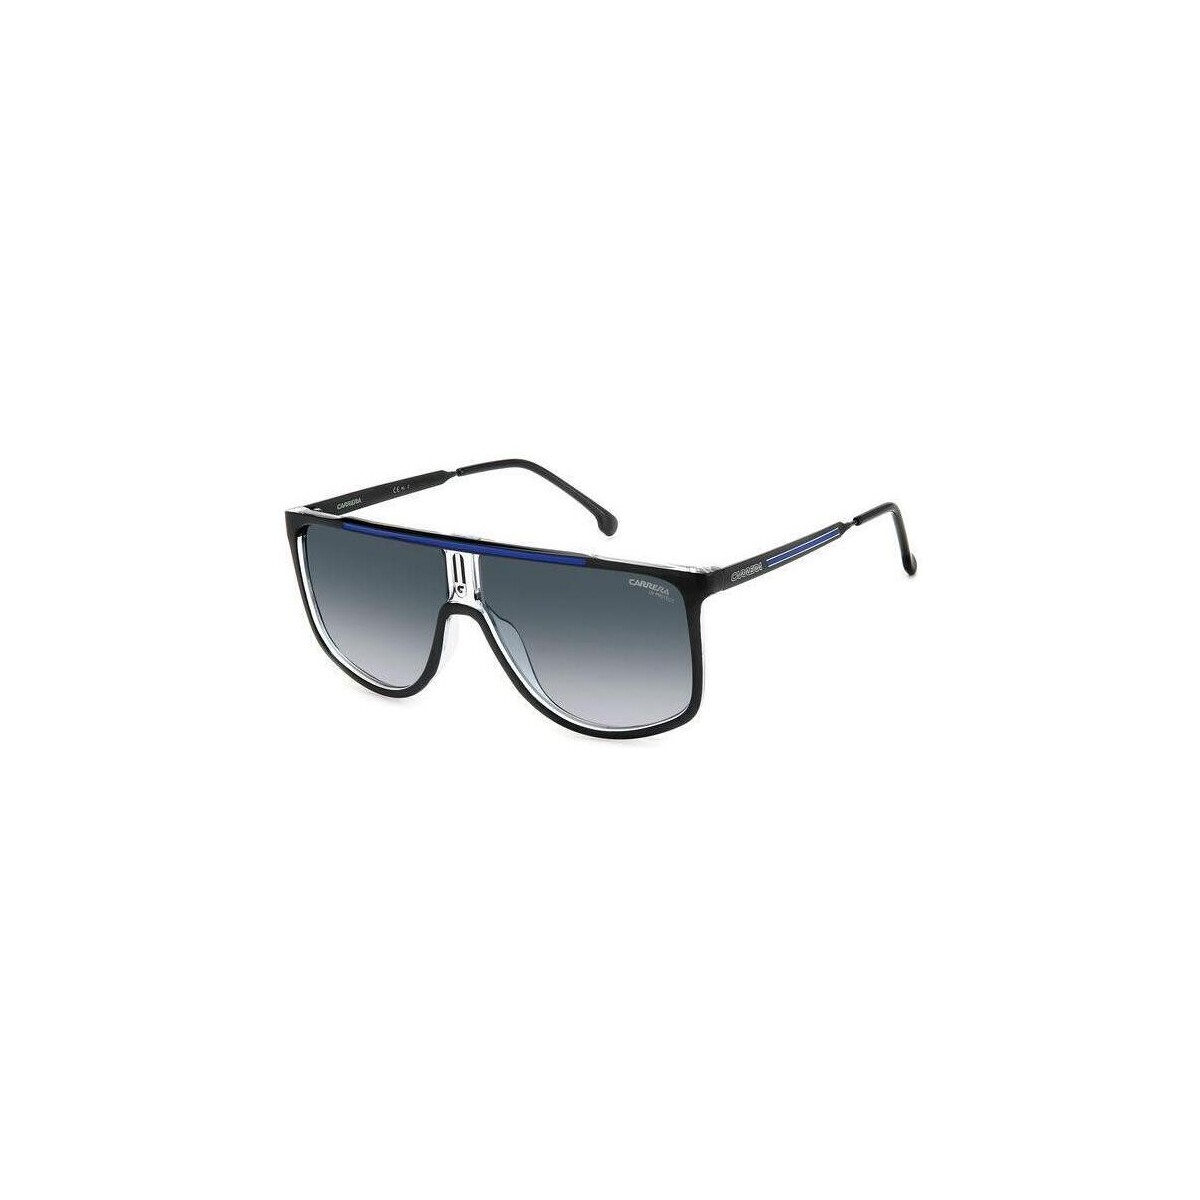 Orologi & Gioielli Uomo Occhiali da sole Carrera 1056/S Occhiali da sole, Nero/Blu, 61 mm Nero